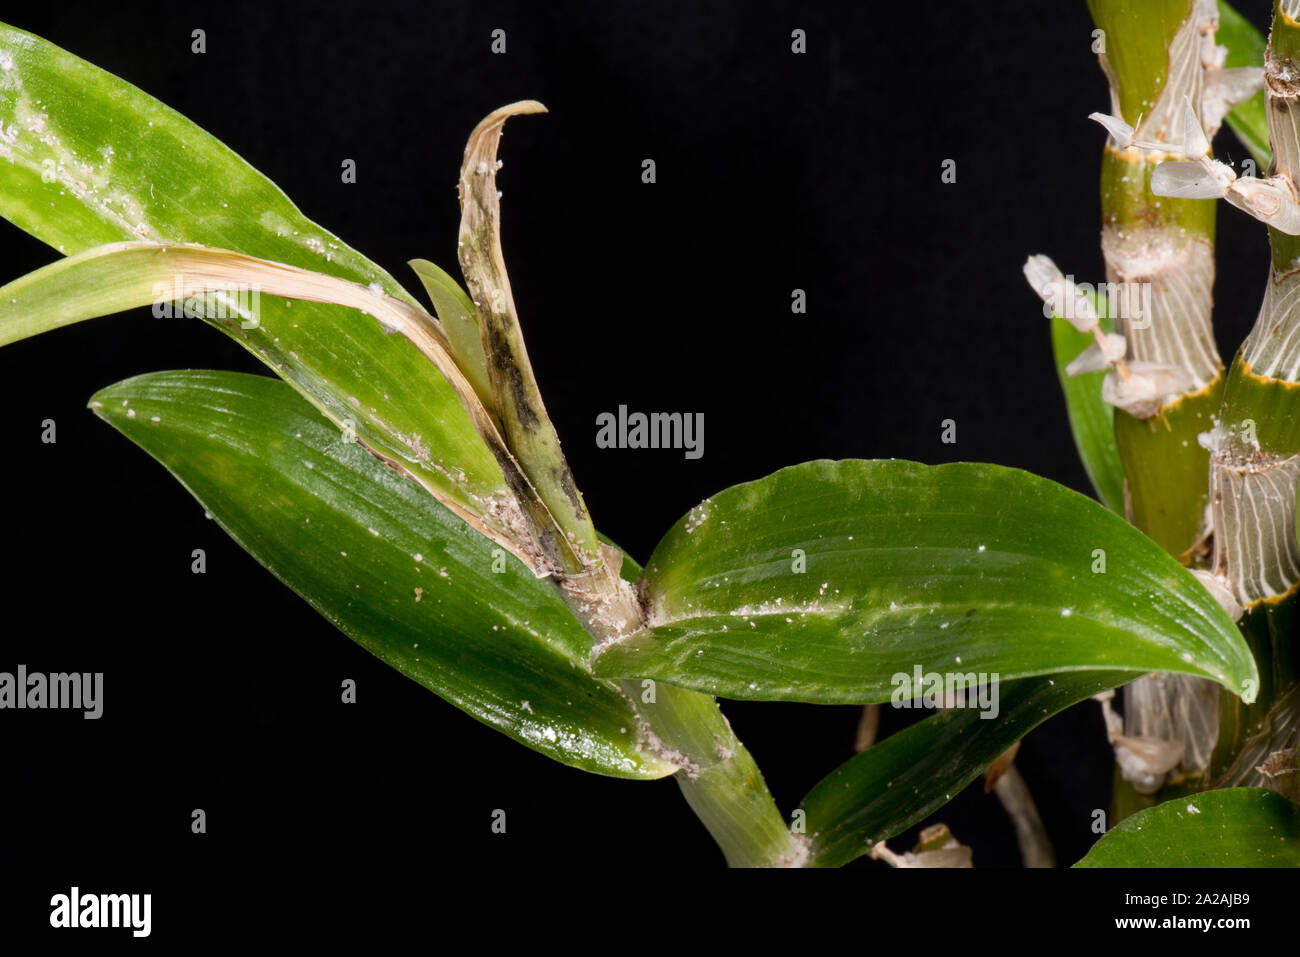 Unklar bleibt oder Knolle mealybug (Pseudococcus viburni) Schädlinge, Beschädigung und Honigtau auf Blätter und Stengel Dendrobium orchid Stockfoto